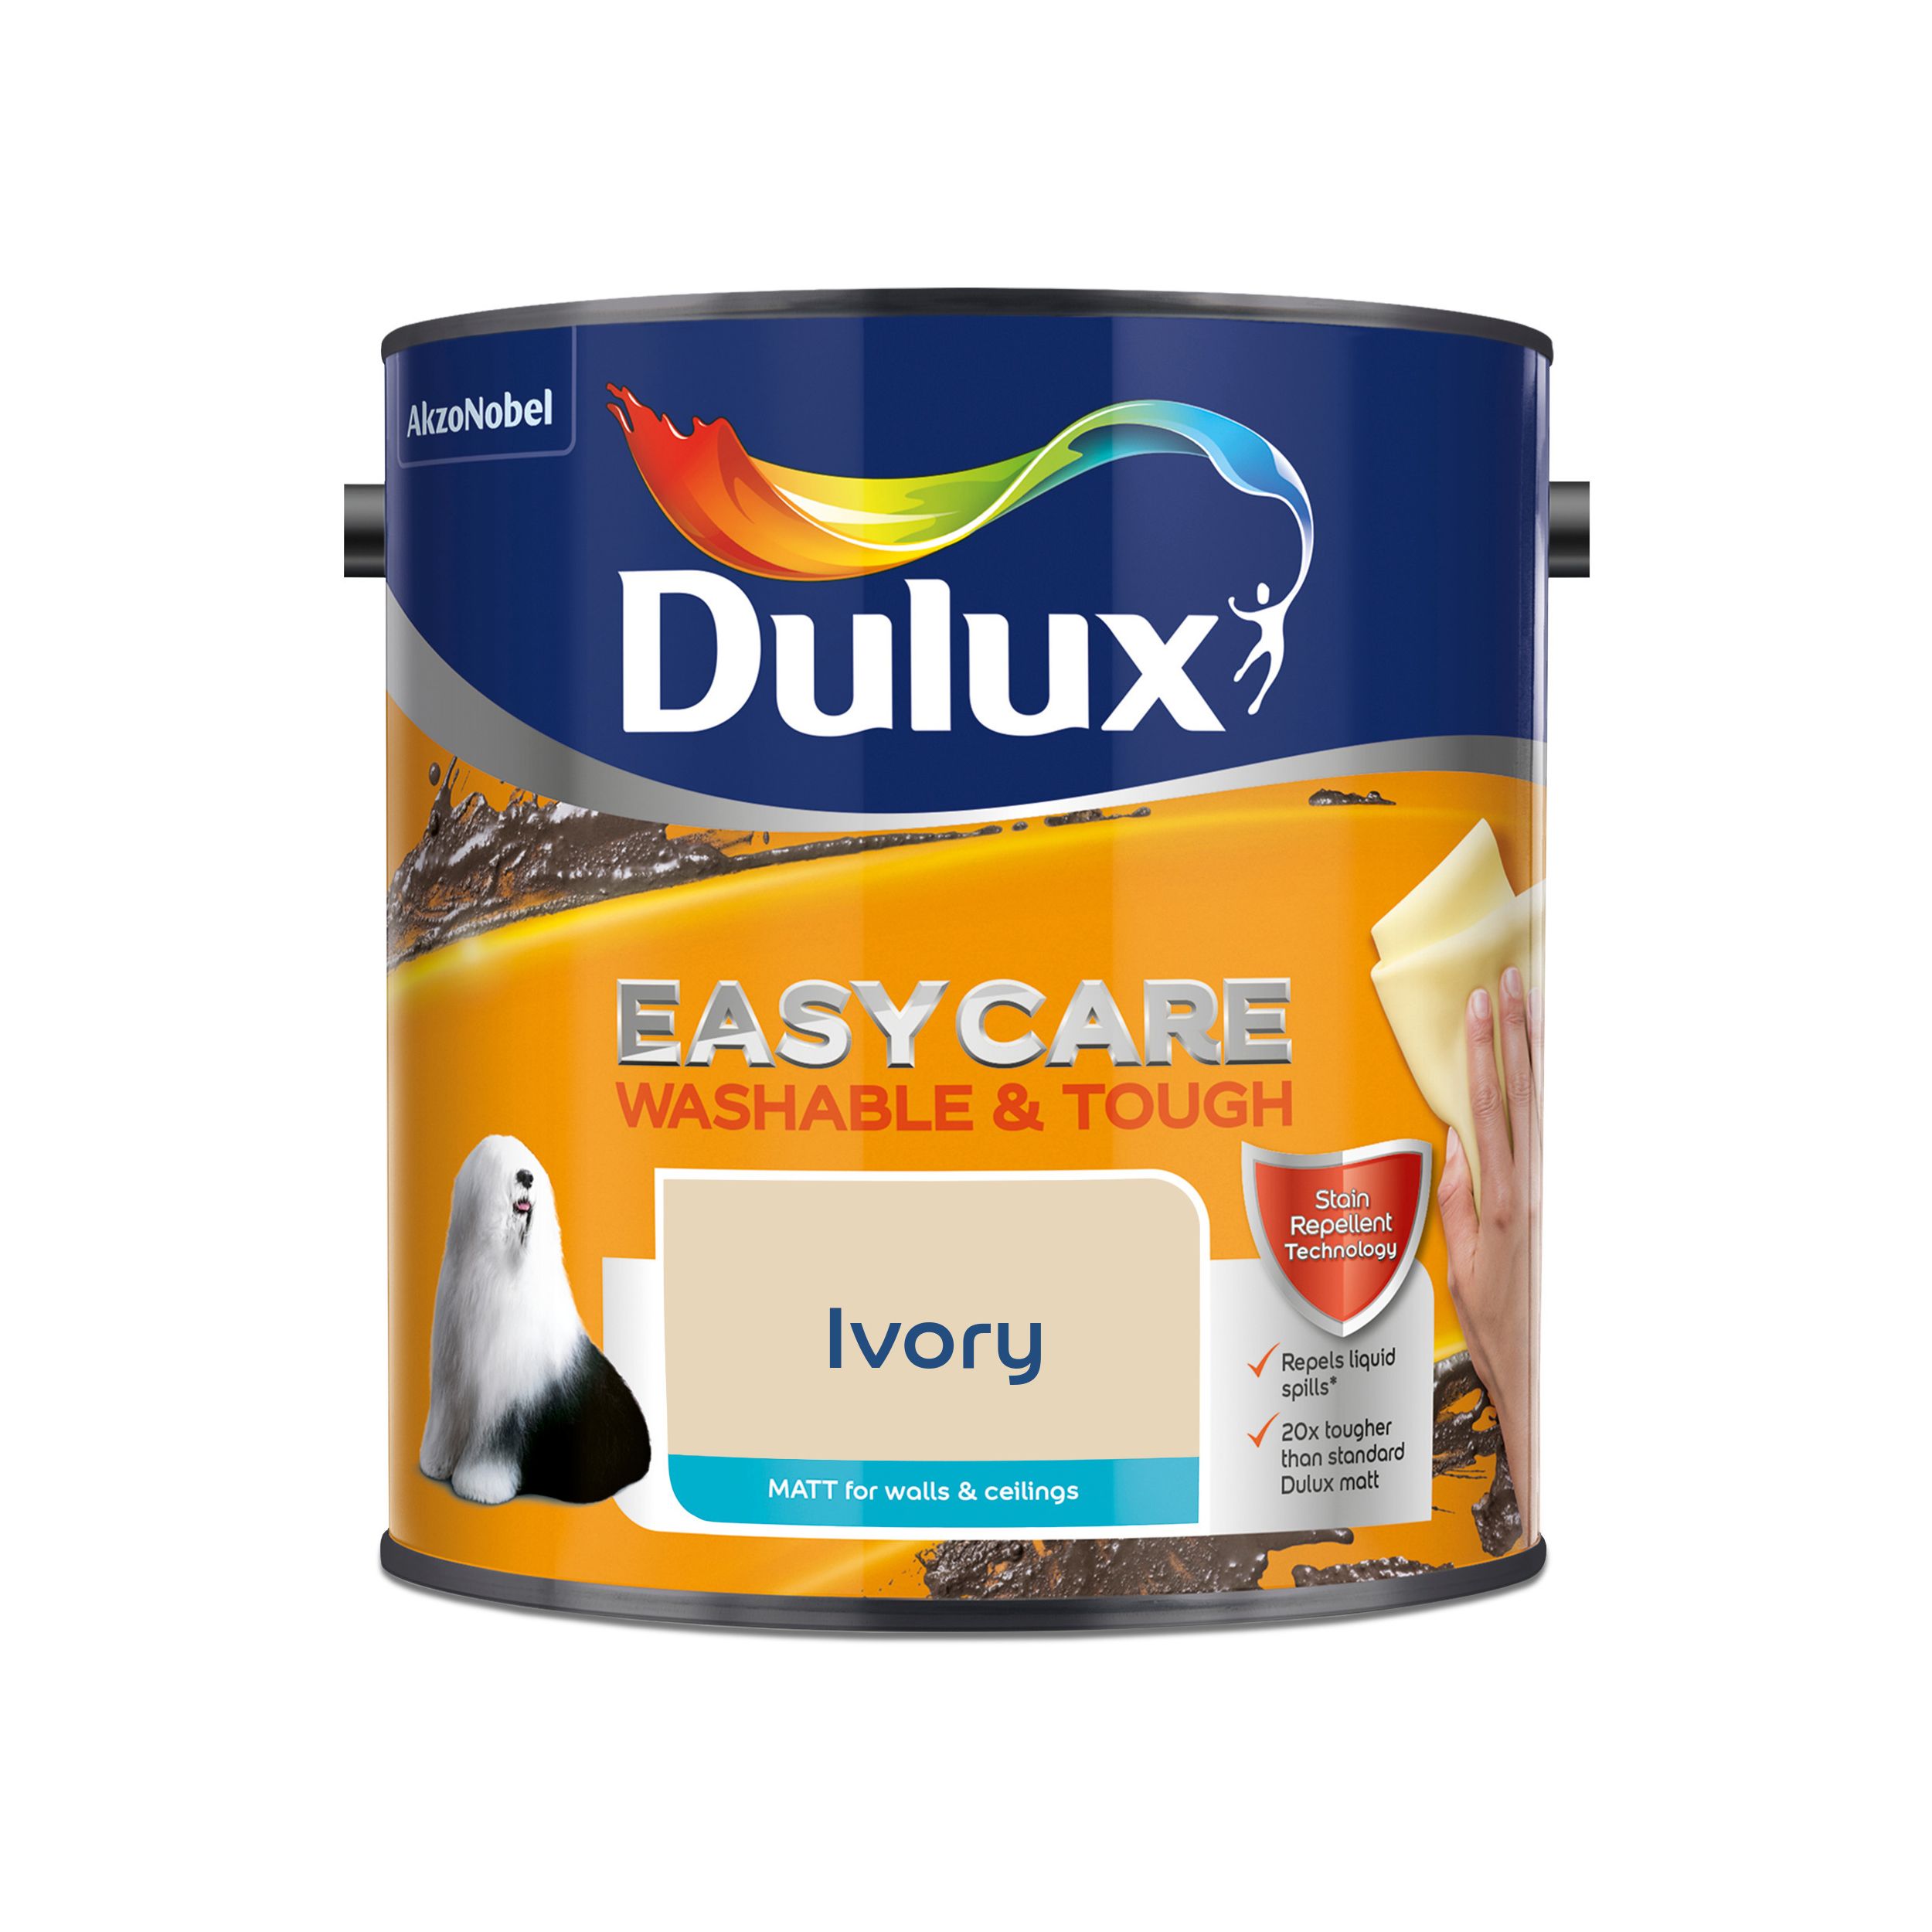 Dulux Easycare Ivory Matt Emulsion paint, 2.5L